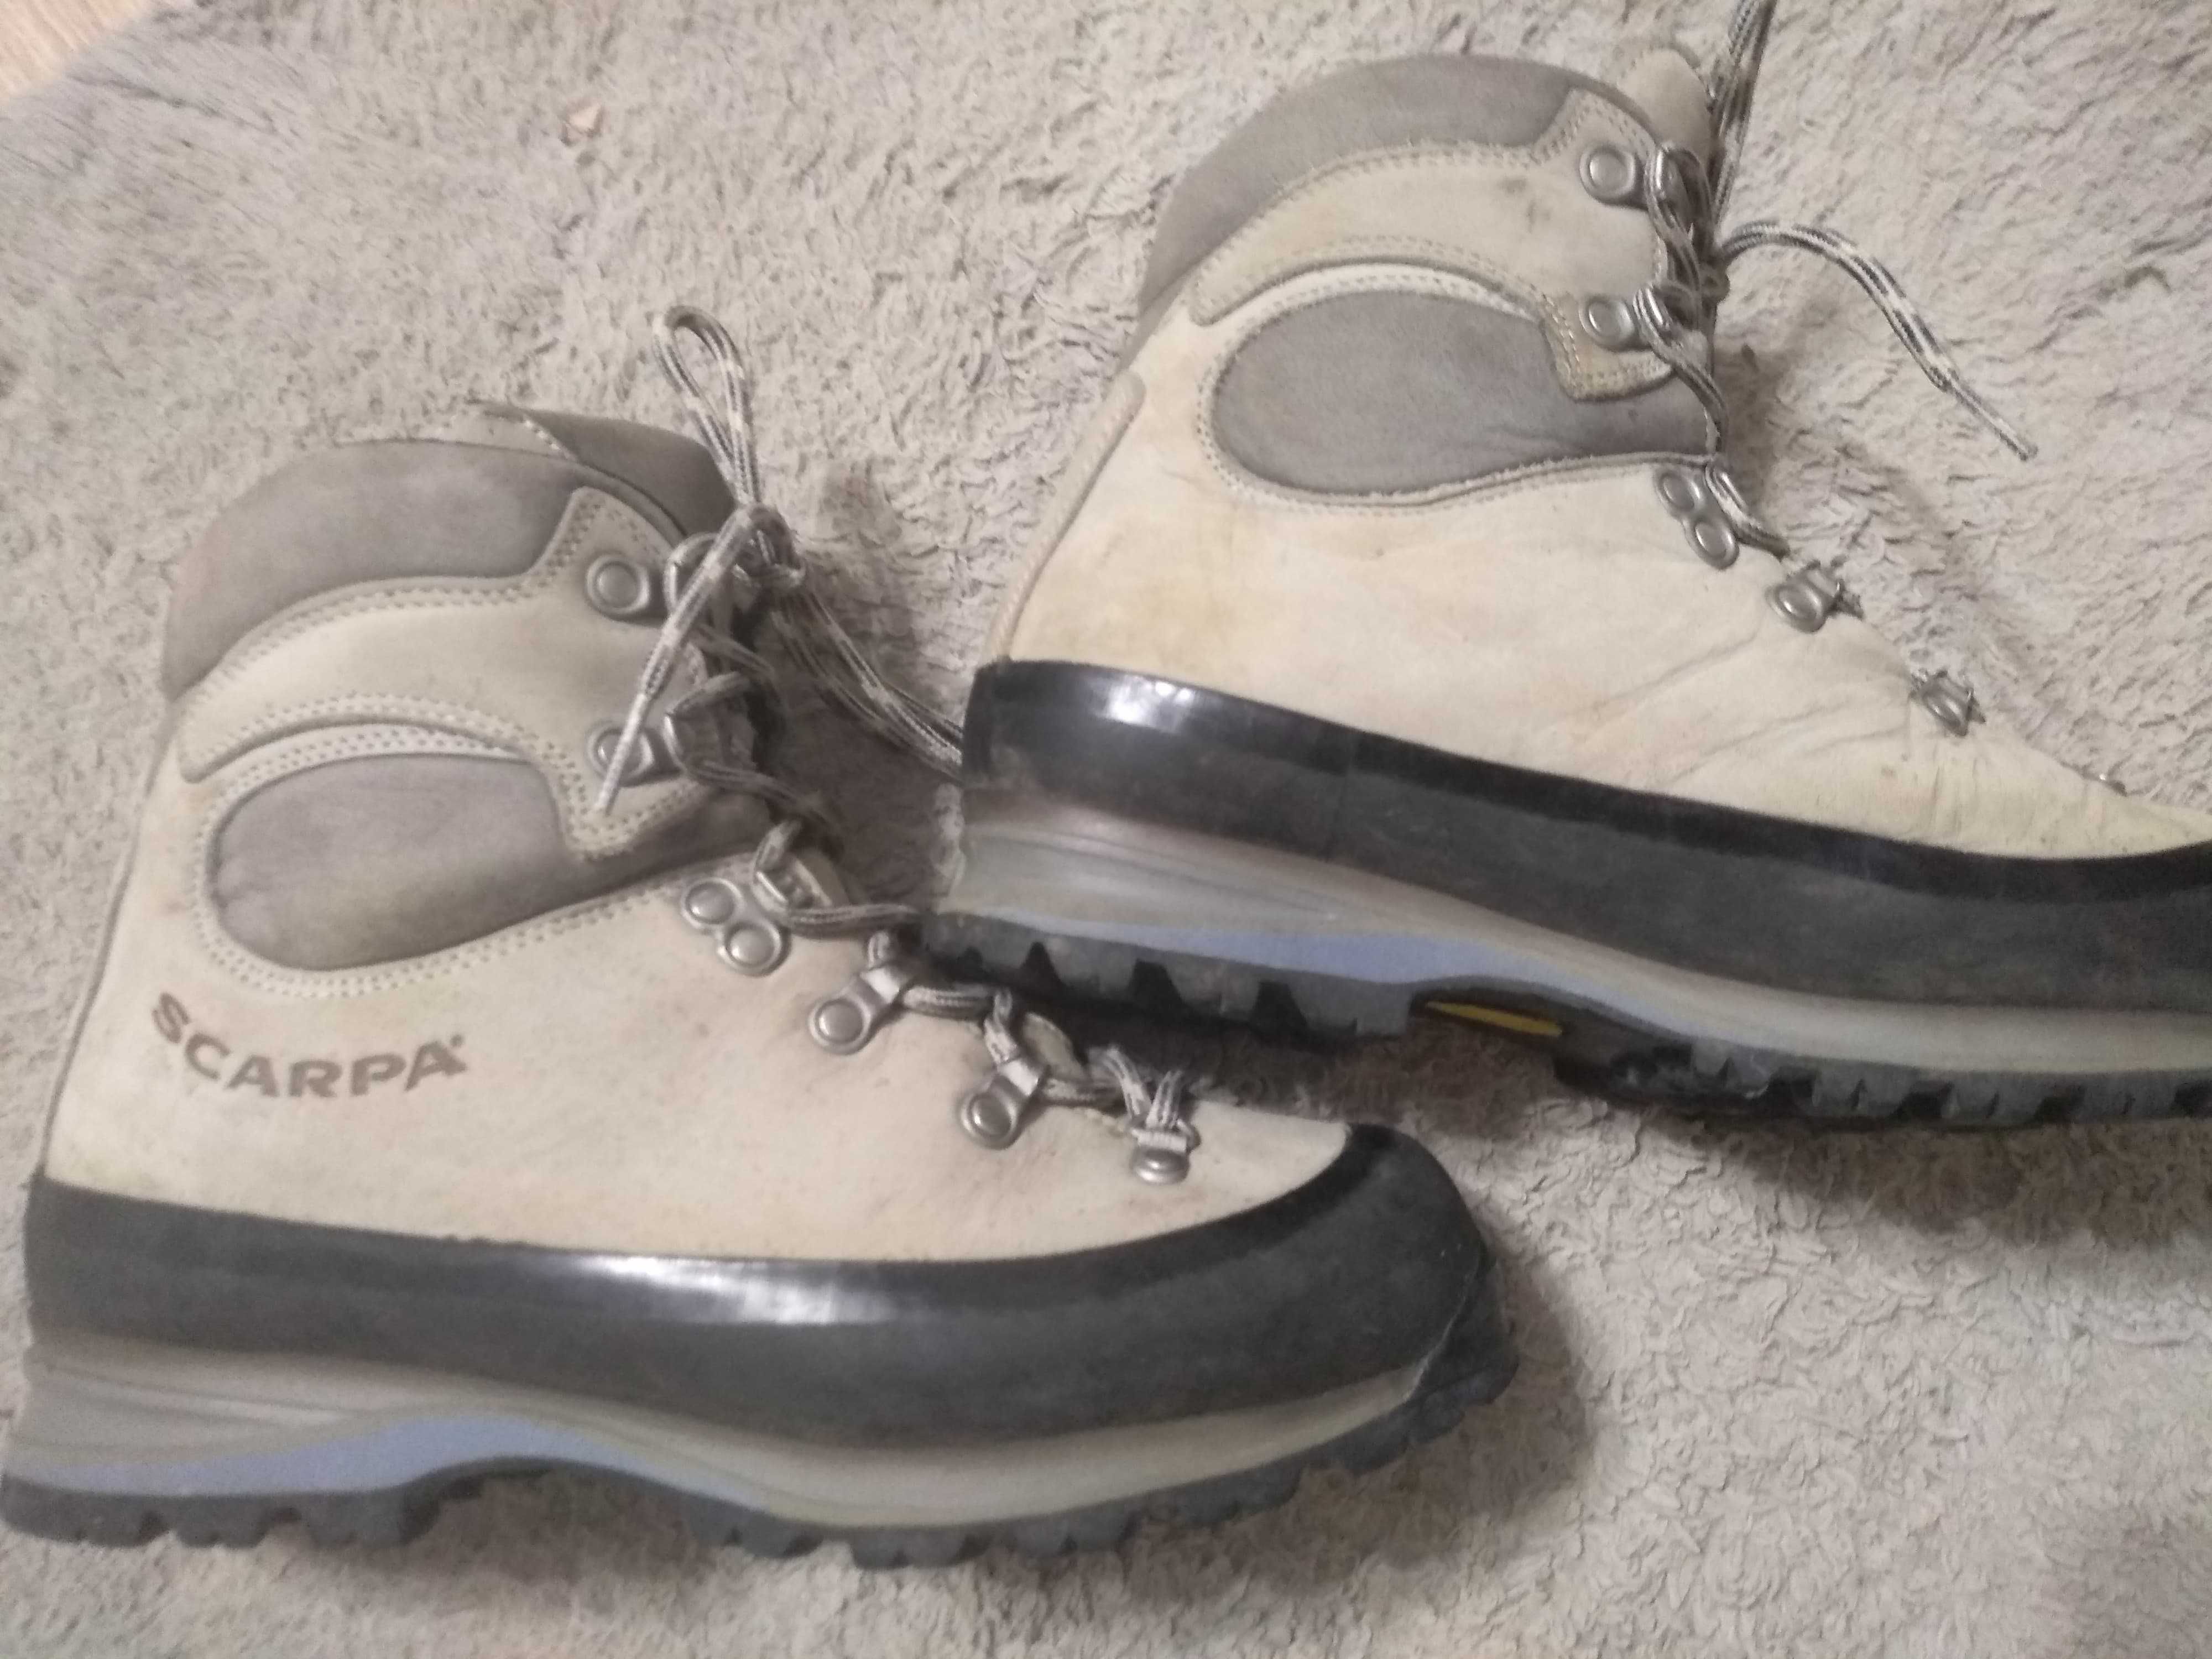 Scarpa Nepal Pro buty trekkingowe 36,5